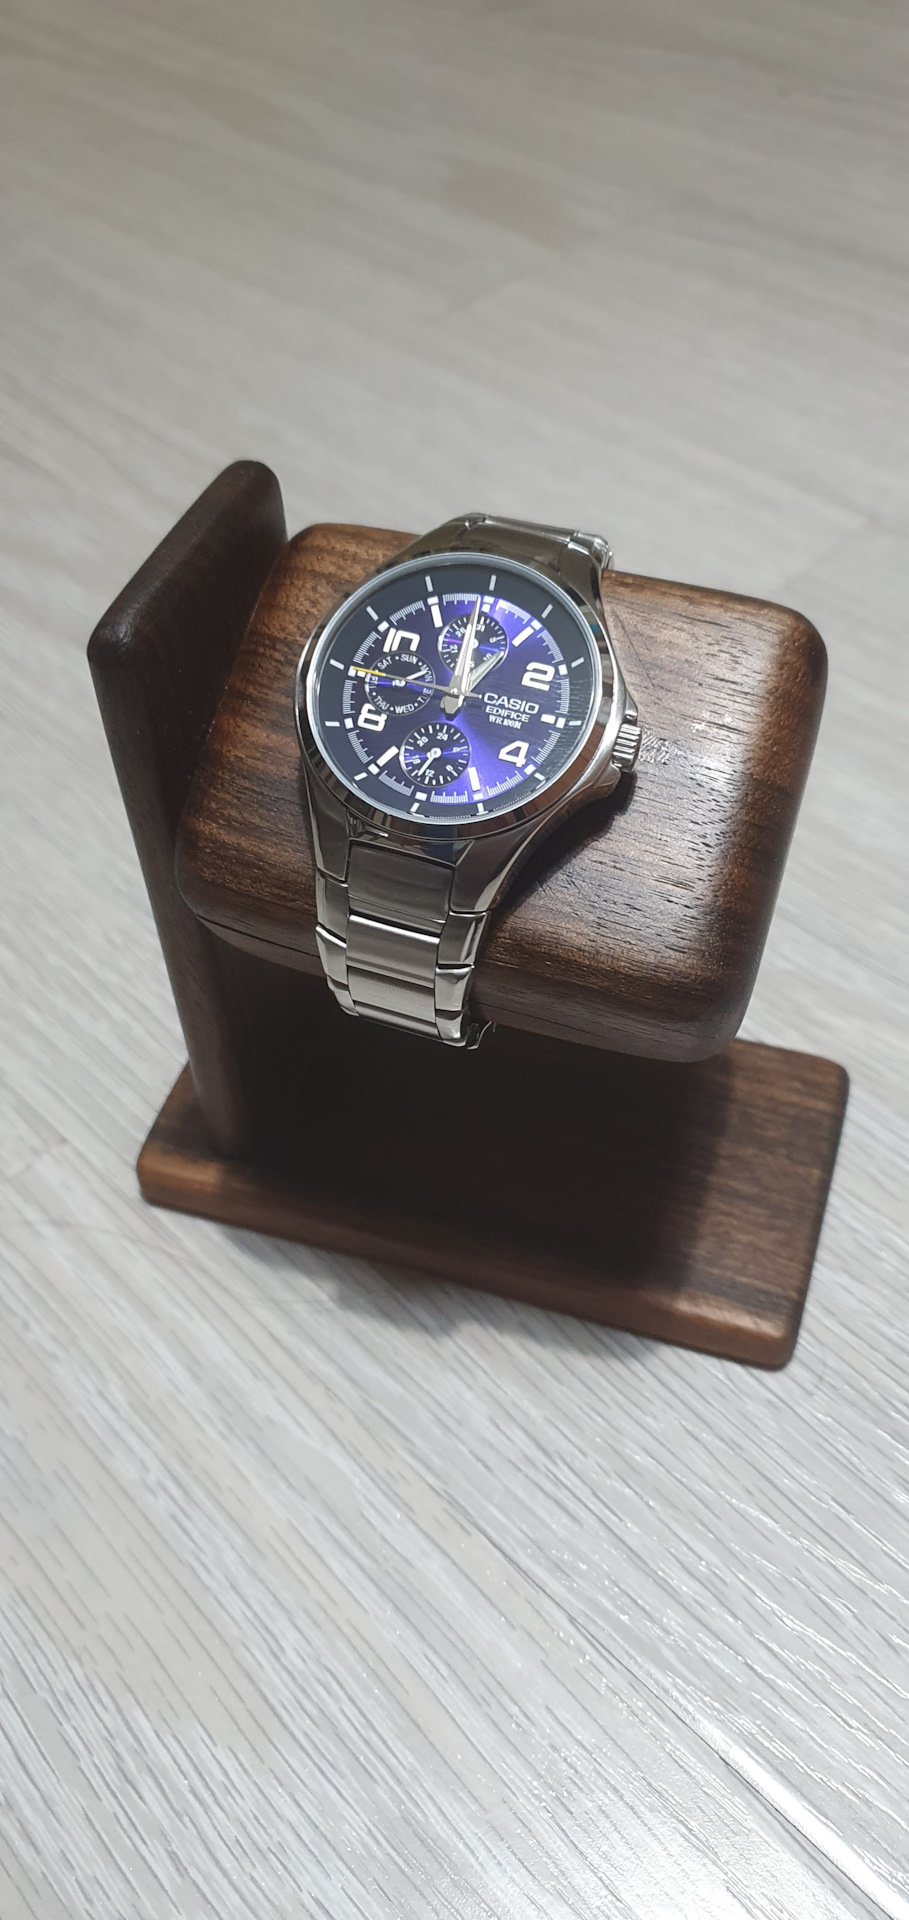 Как красиво упаковать наручные часы в подарок | ТаймАвеню - швейцарские часы и ювелирные украшения